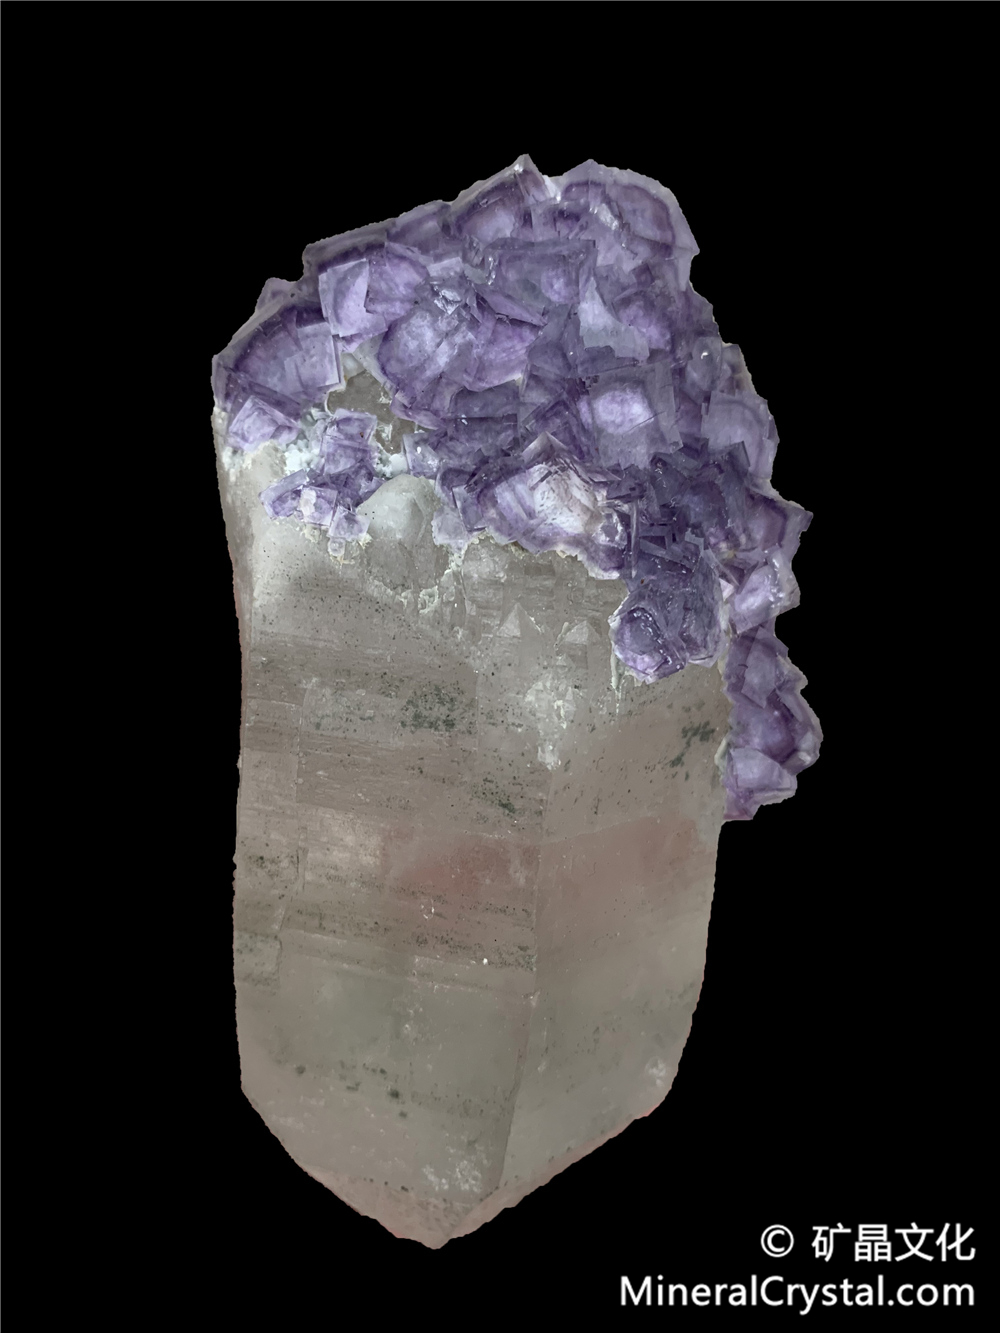 fluorite, quartz